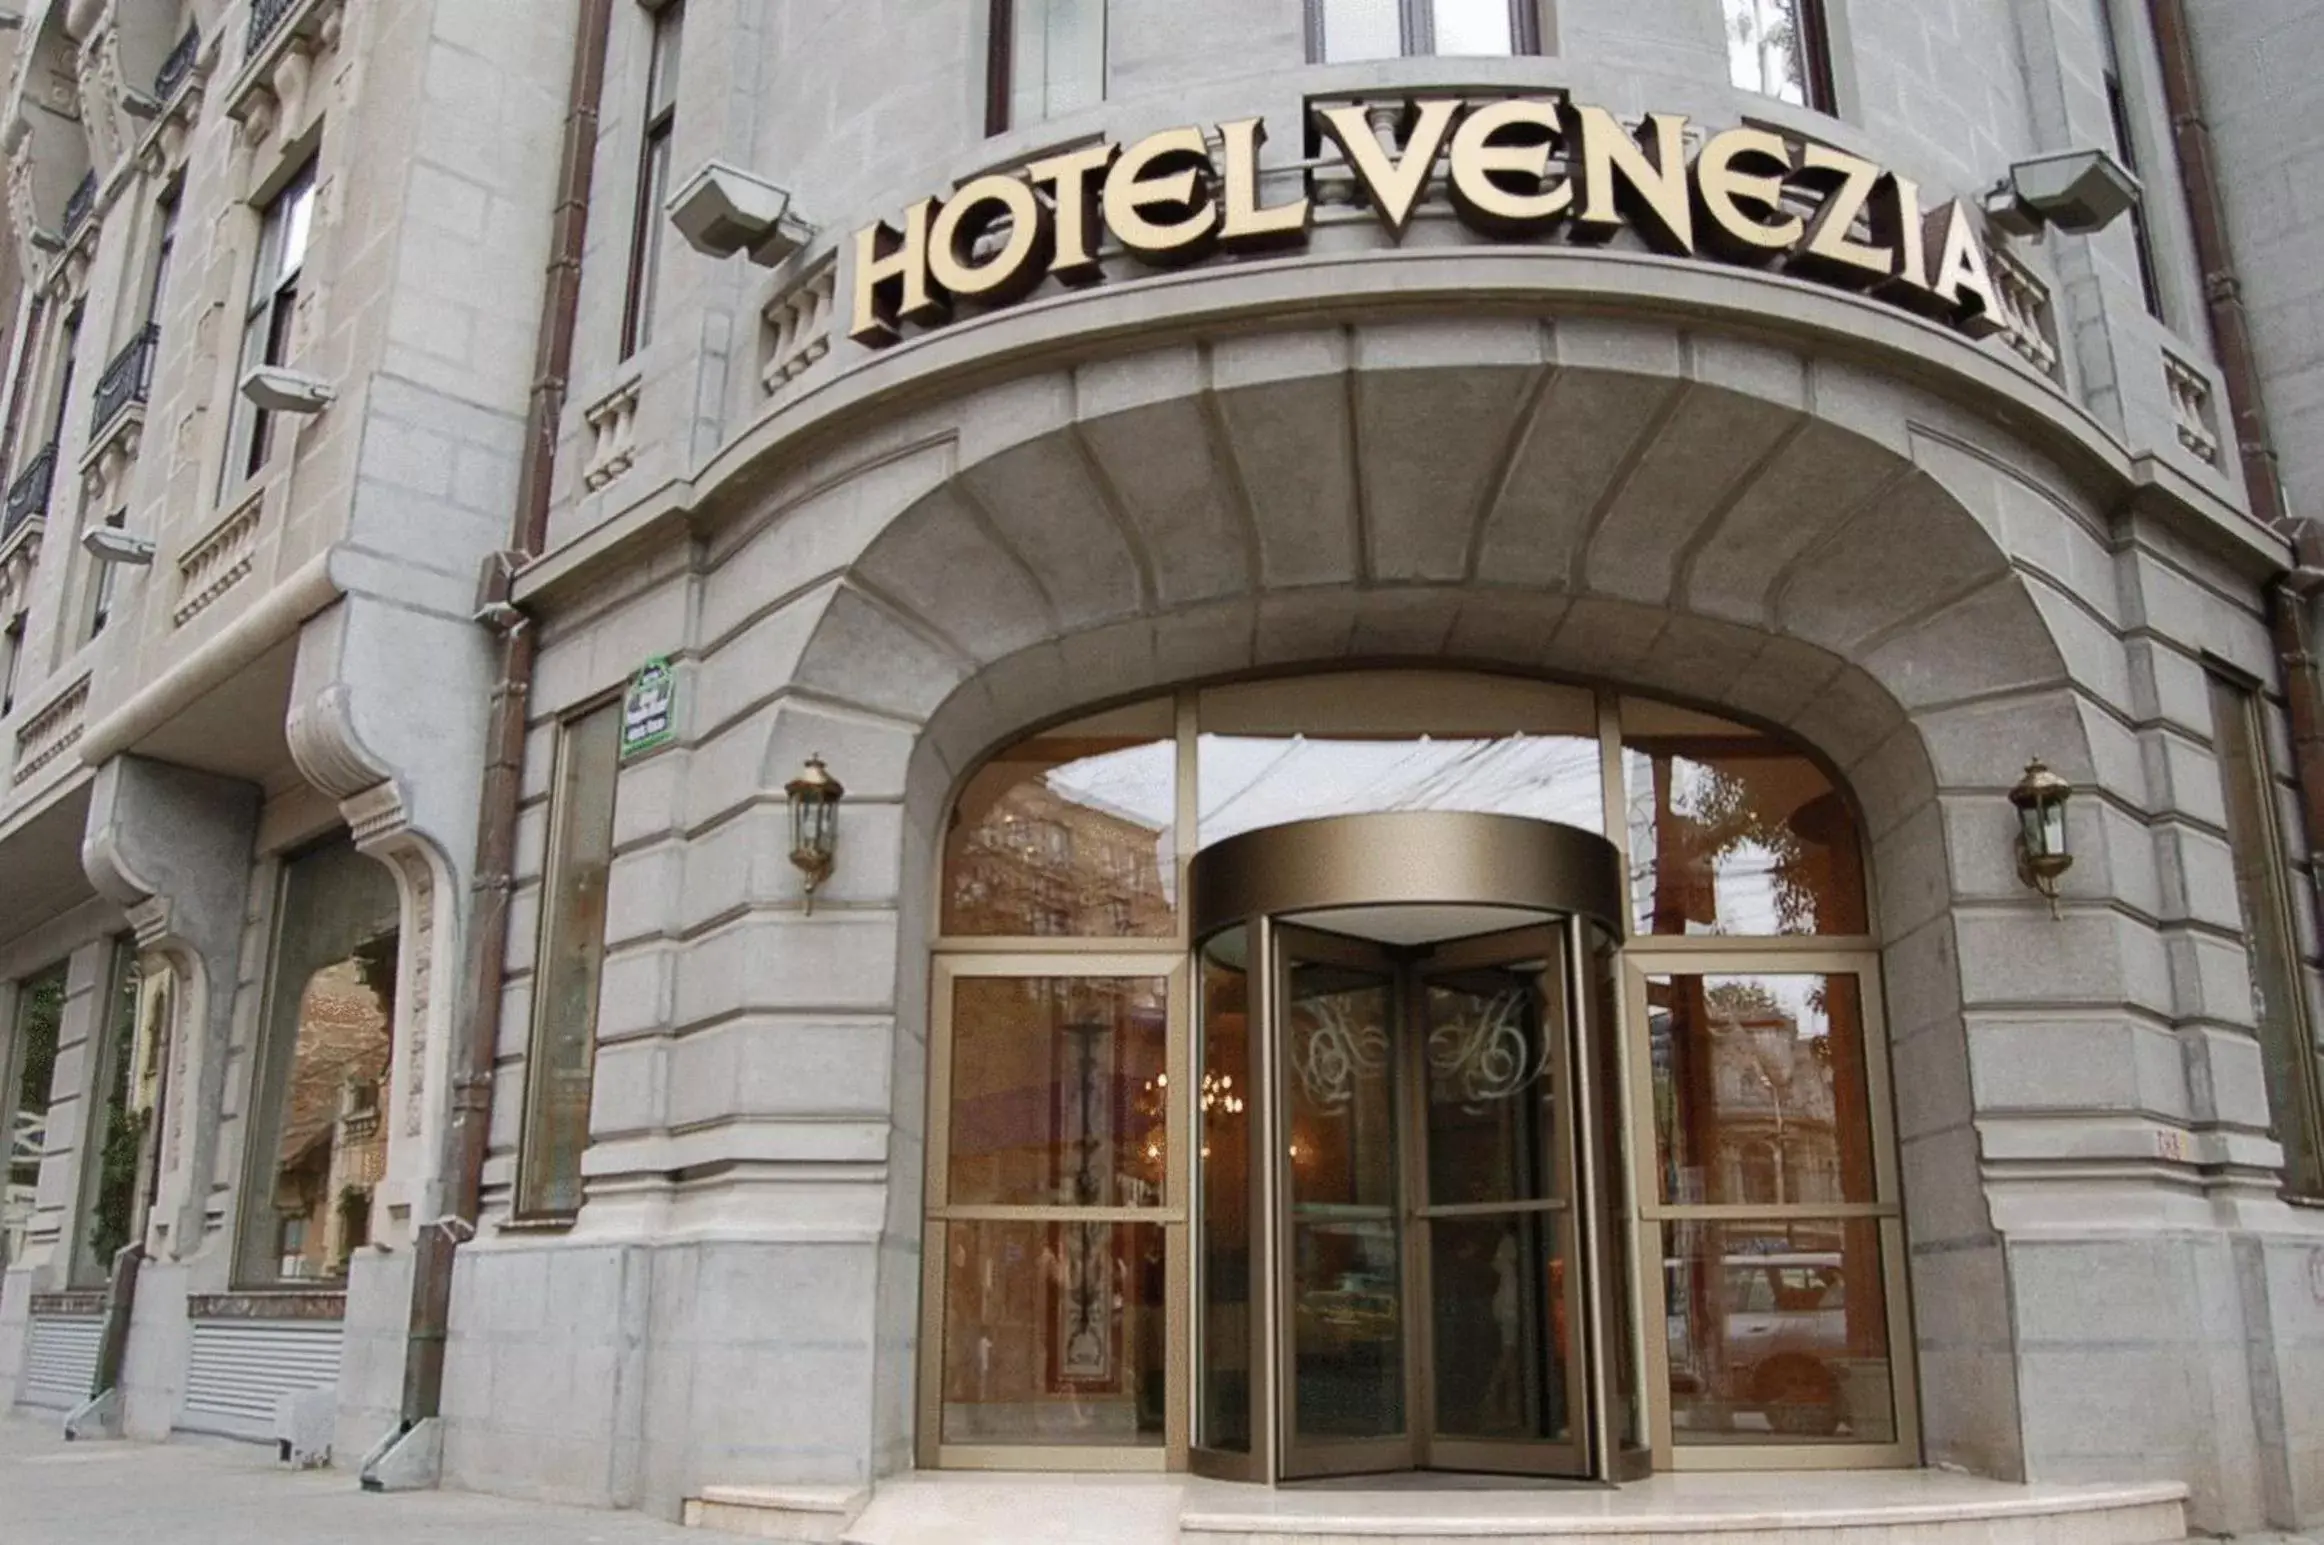 Facade/entrance in Hotel Venezia by Zeus International